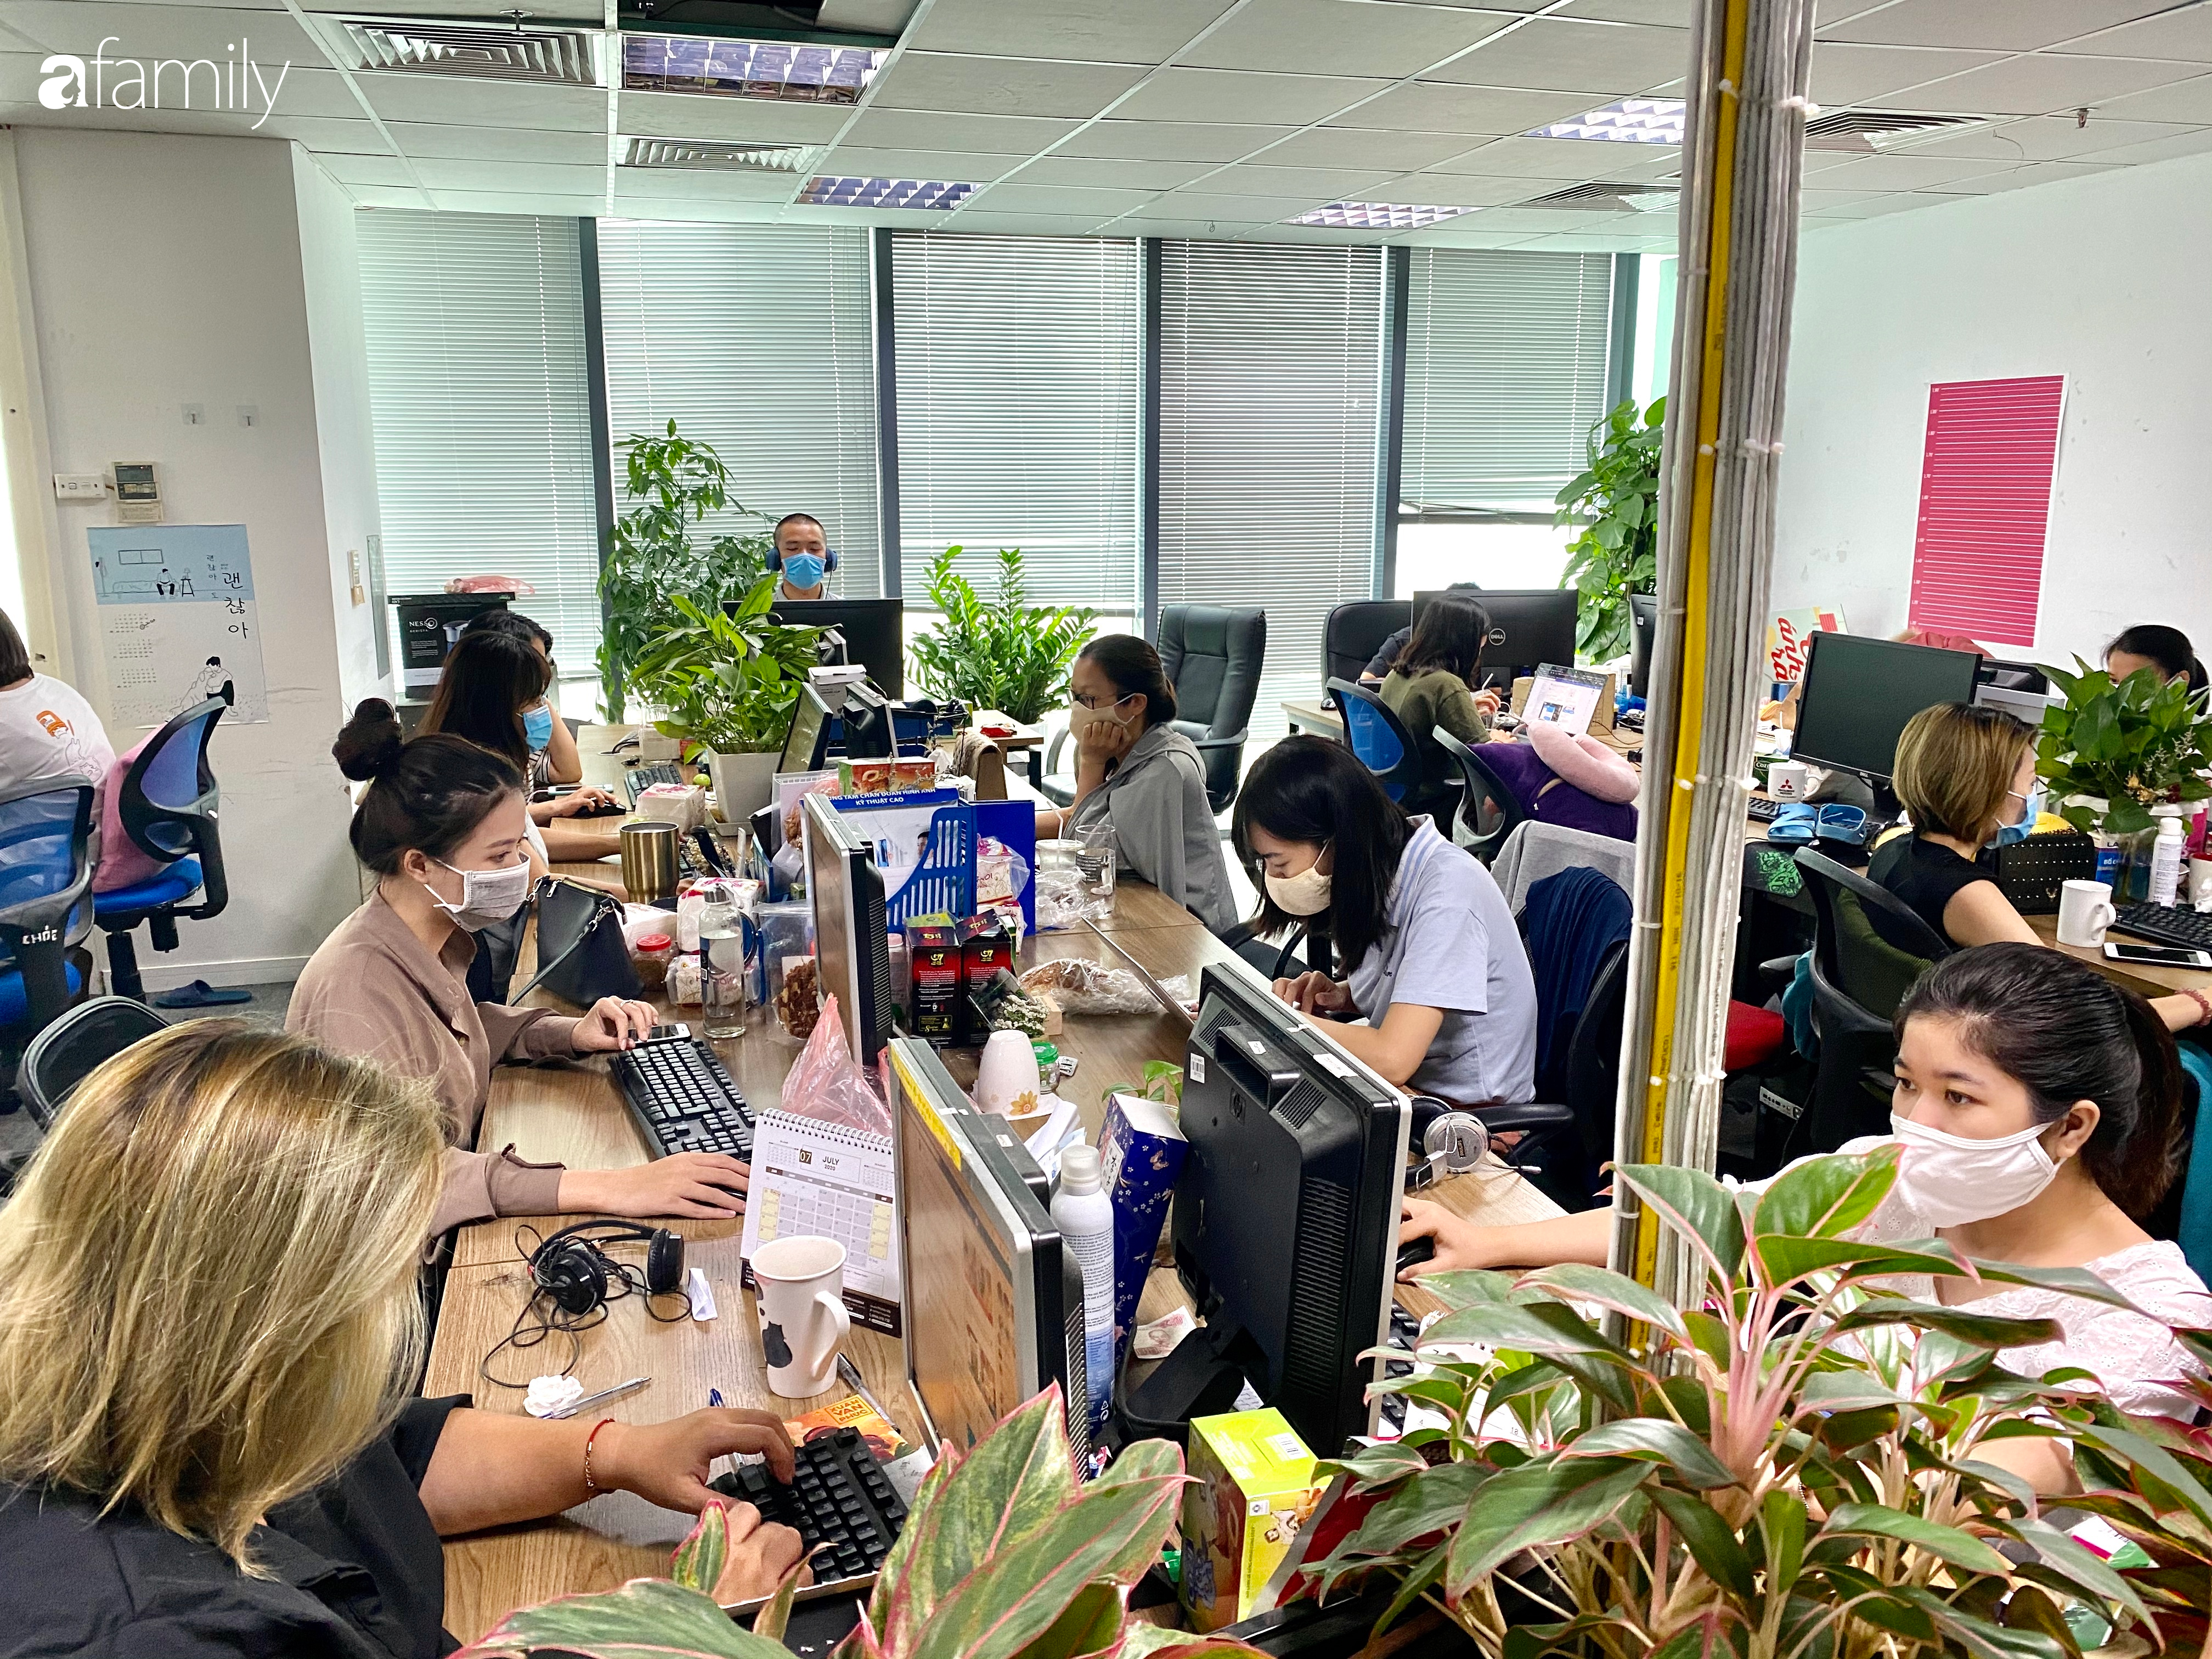 Sau ca bệnh thứ 416, một công ty truyền thông ở Hà Nội nghiêm túc chủ động đeo khẩu trang tại văn phòng, yêu cầu nhân viên du lịch Đà Nẵng khai báo tình trạng sức khỏe - Ảnh 3.